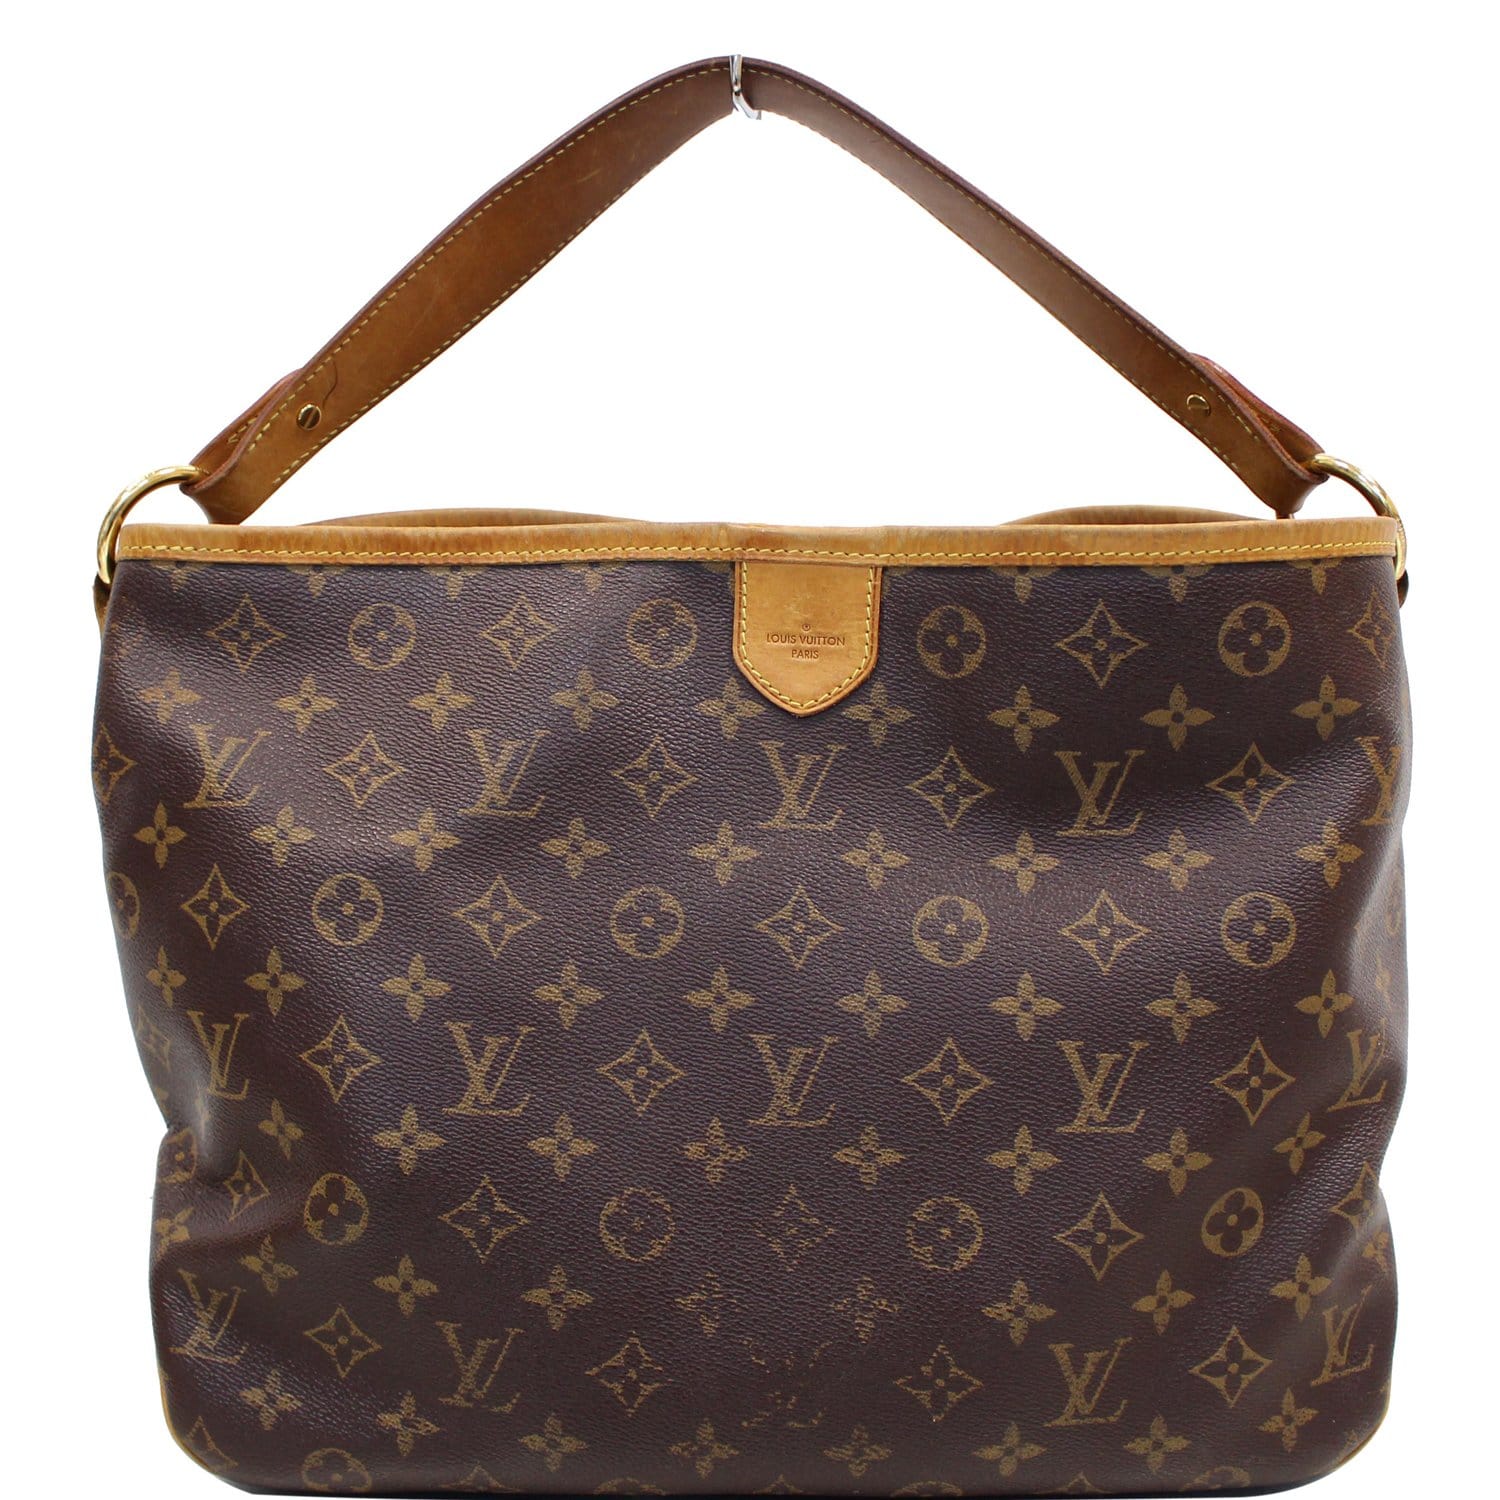 Pre-Owned LOUIS VUITTON Louis Vuitton Delightful PM Shoulder Bag M50155  Monogram Canvas Leather Brown Semi-Shoulder One (Good) 